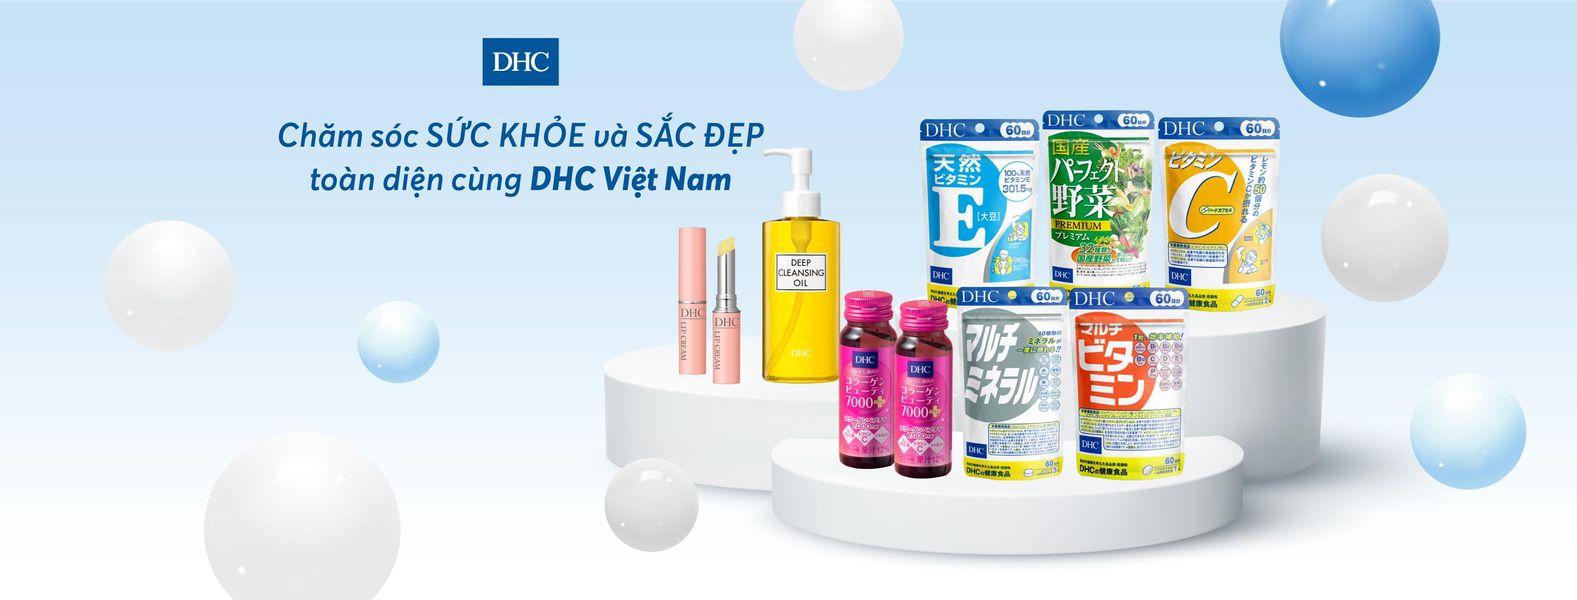 Thương hiệu DHC nổi tiếng với các sản phẩm chất lượng mà giá cả hợp lý